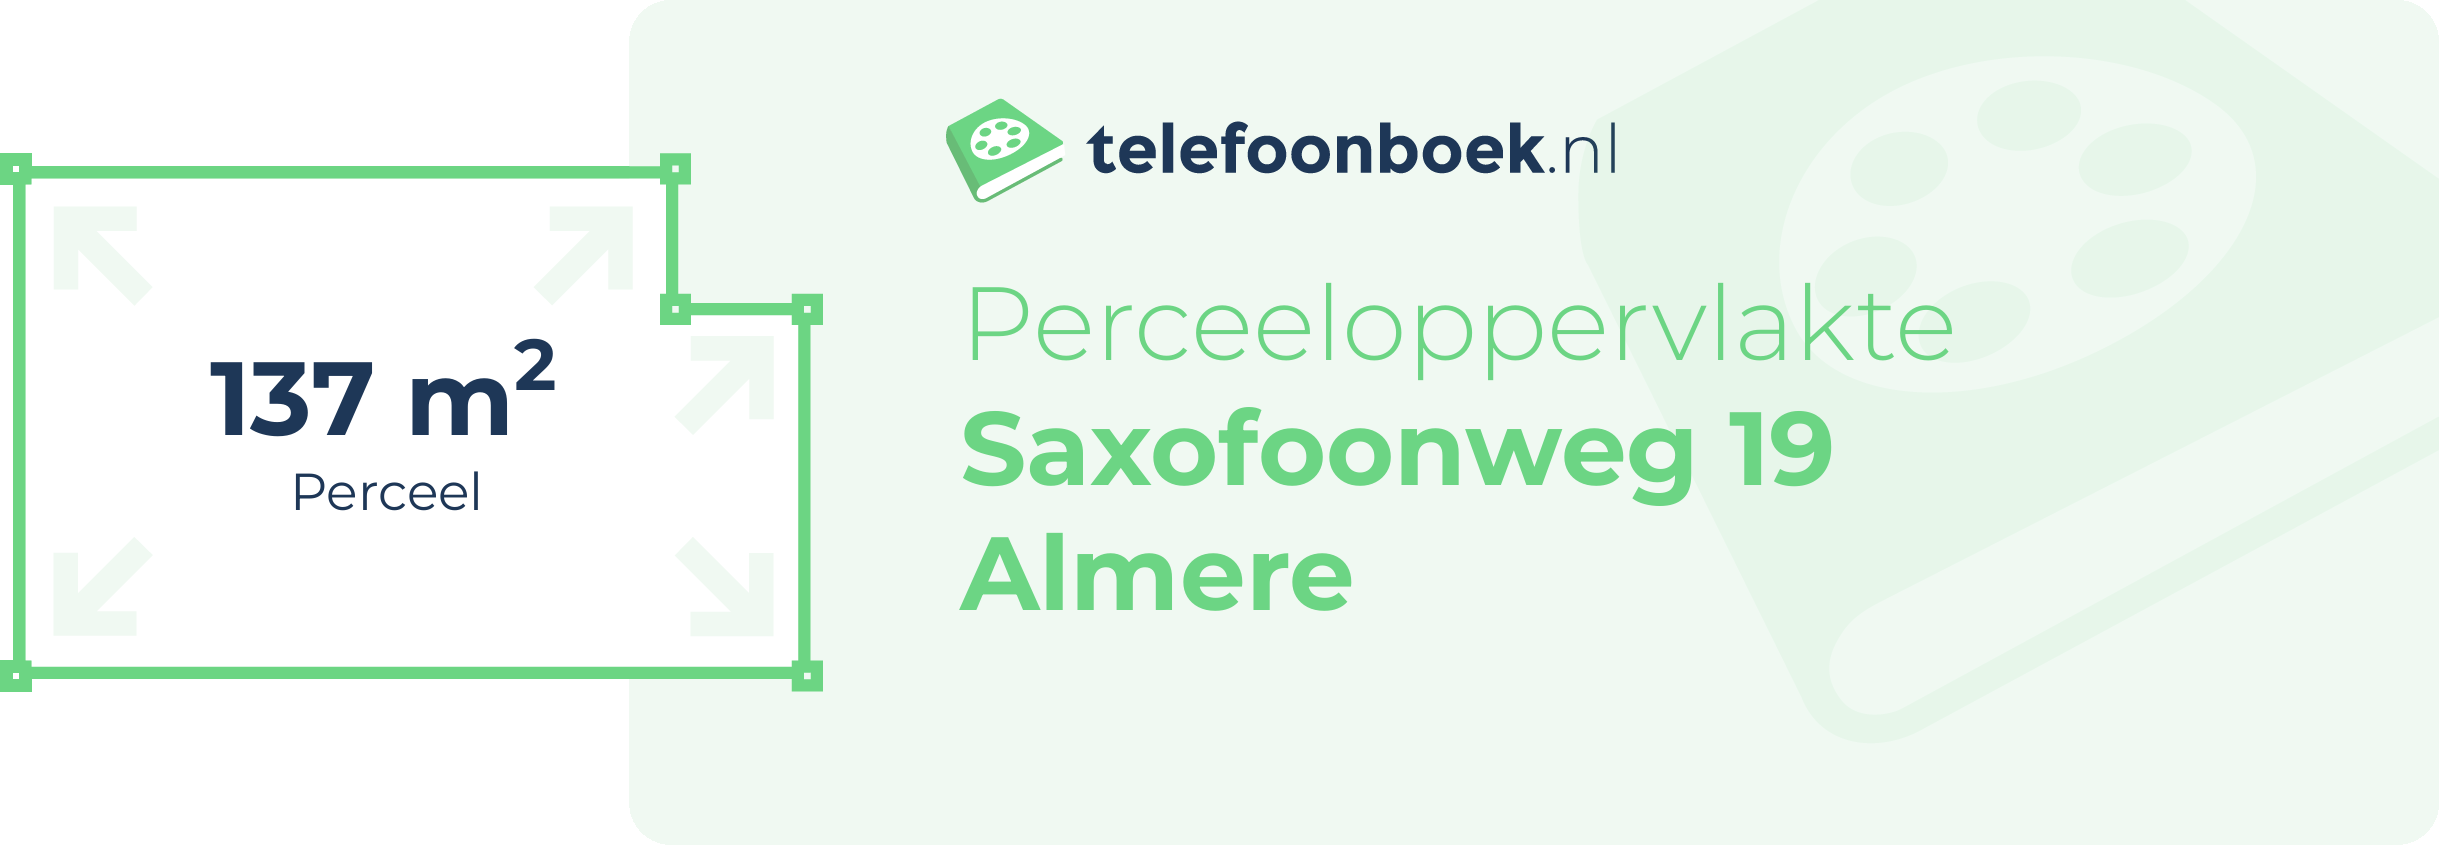 Perceeloppervlakte Saxofoonweg 19 Almere